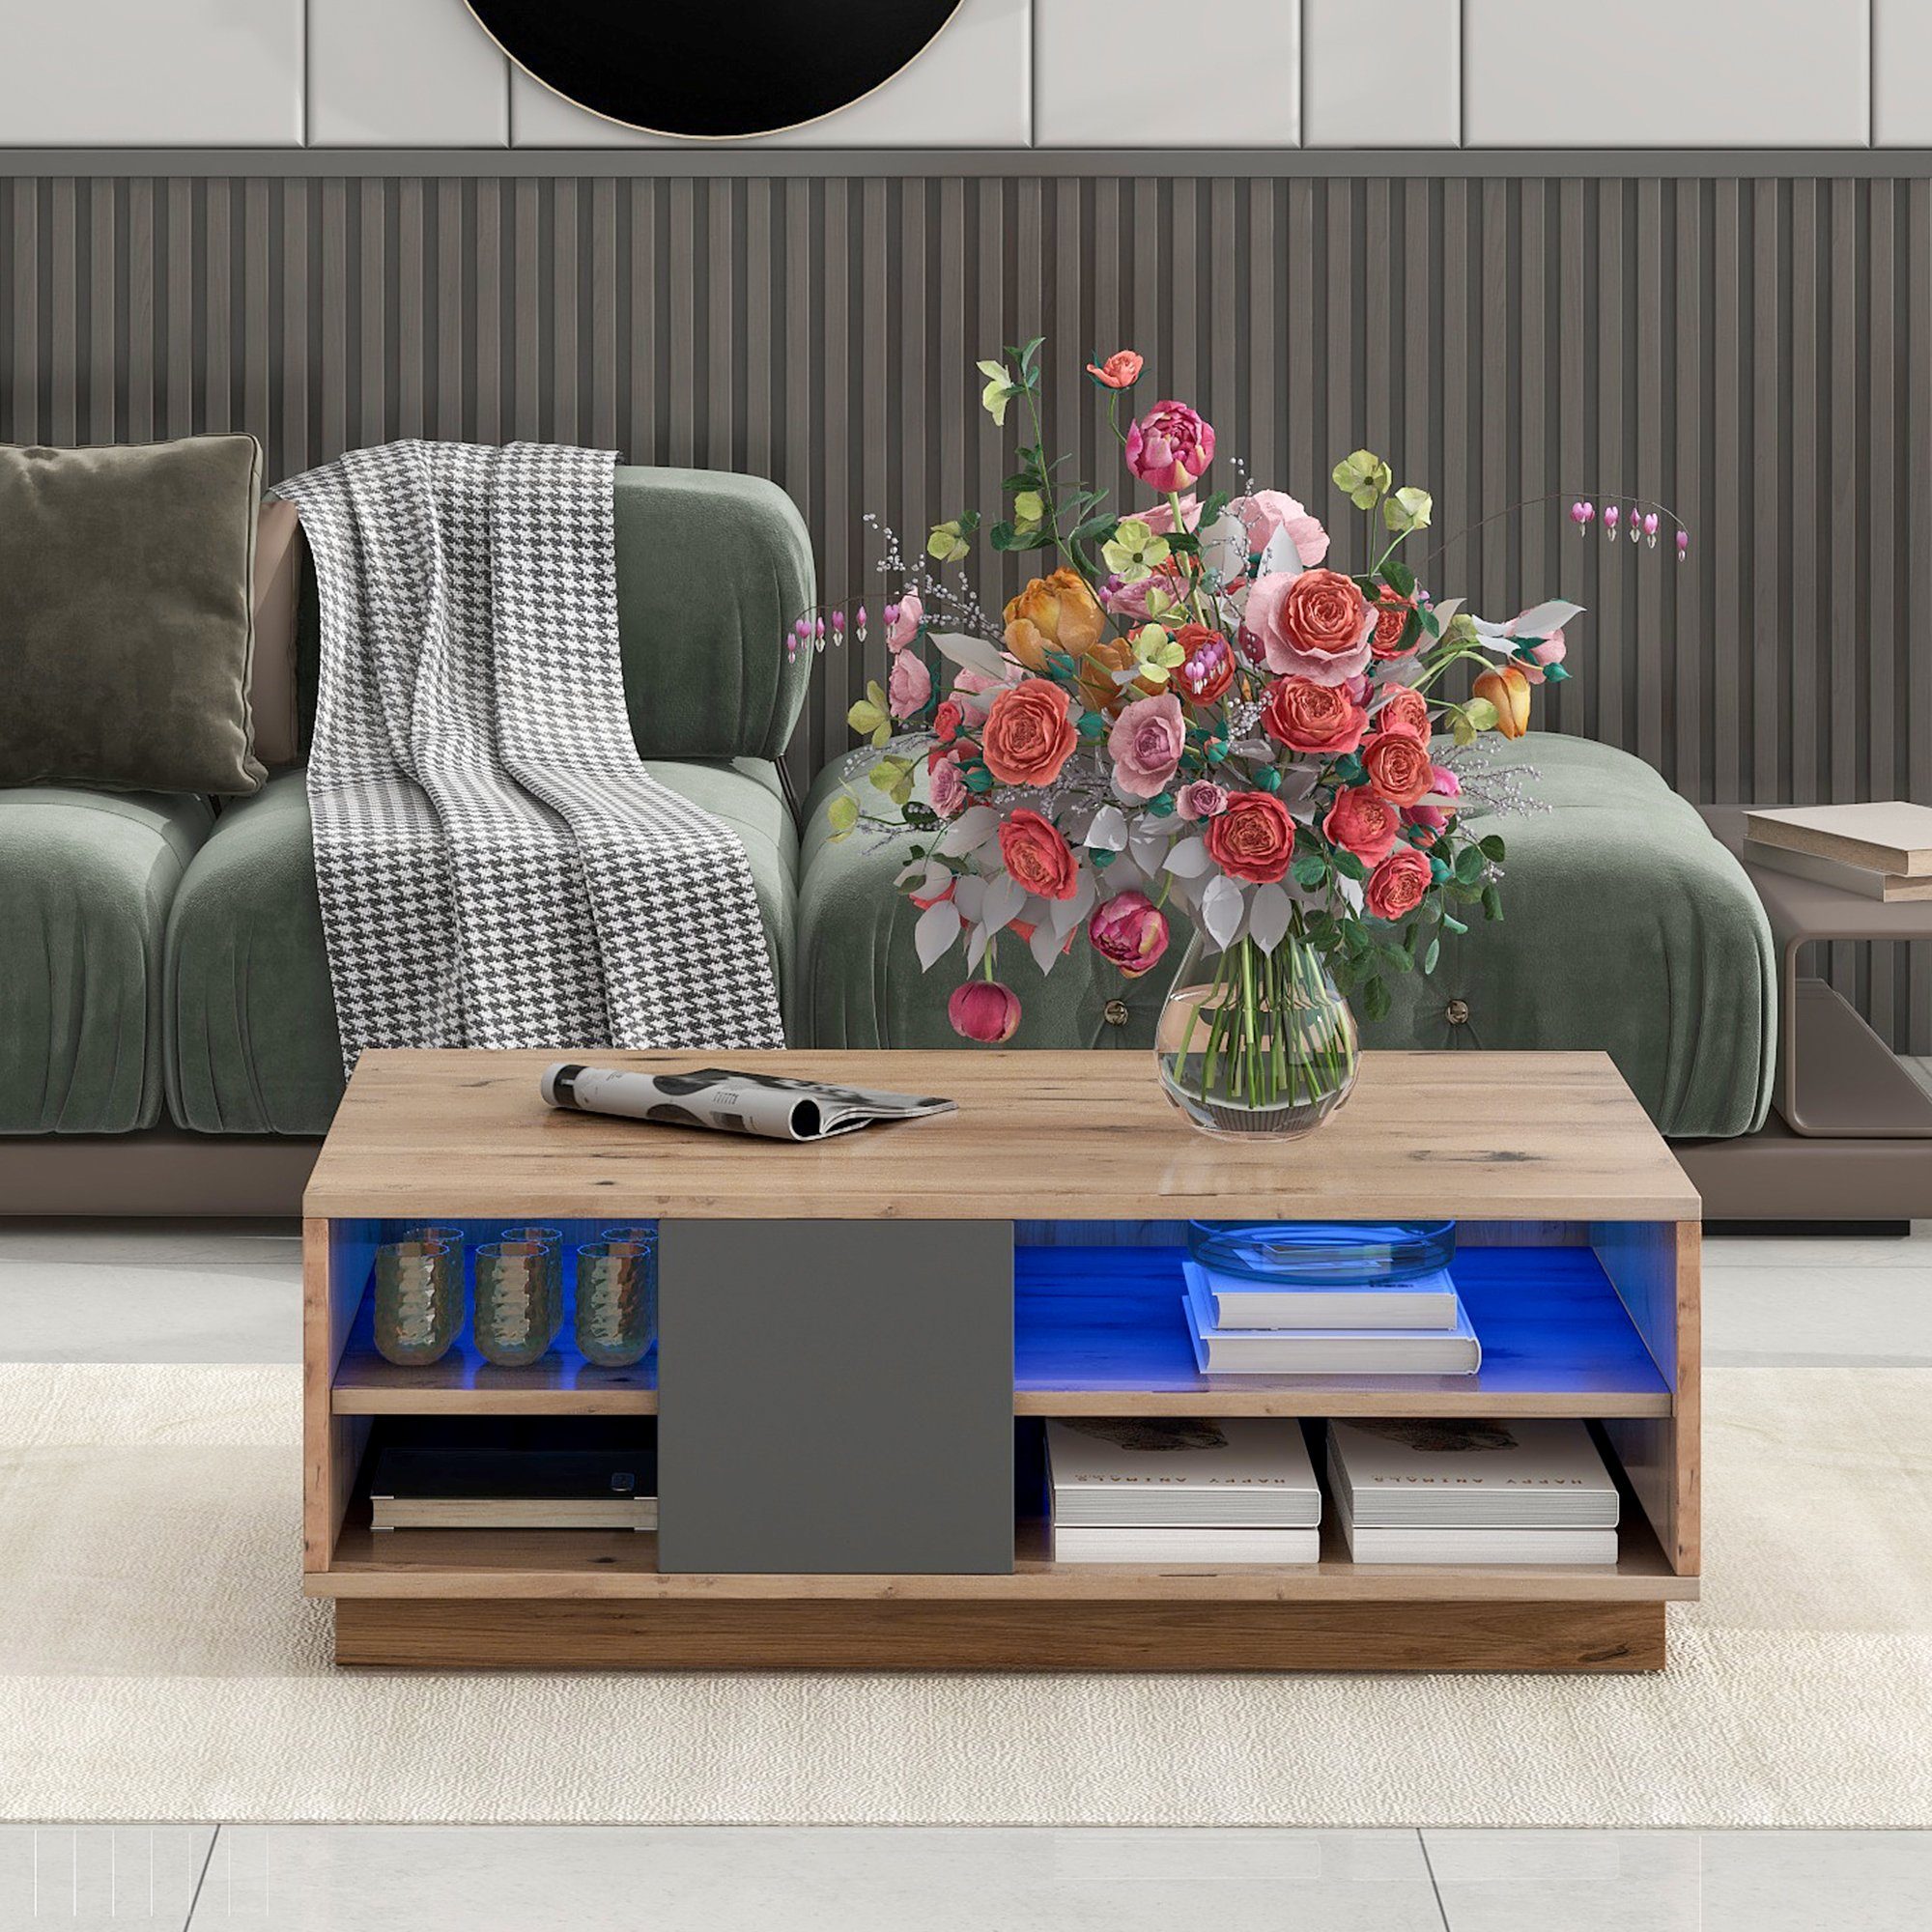 Couchtisch im Originalfarbener Blockstil Mosaik-Couchtisch, Wohnzimmermöbel moderne REDOM zweifarbiger